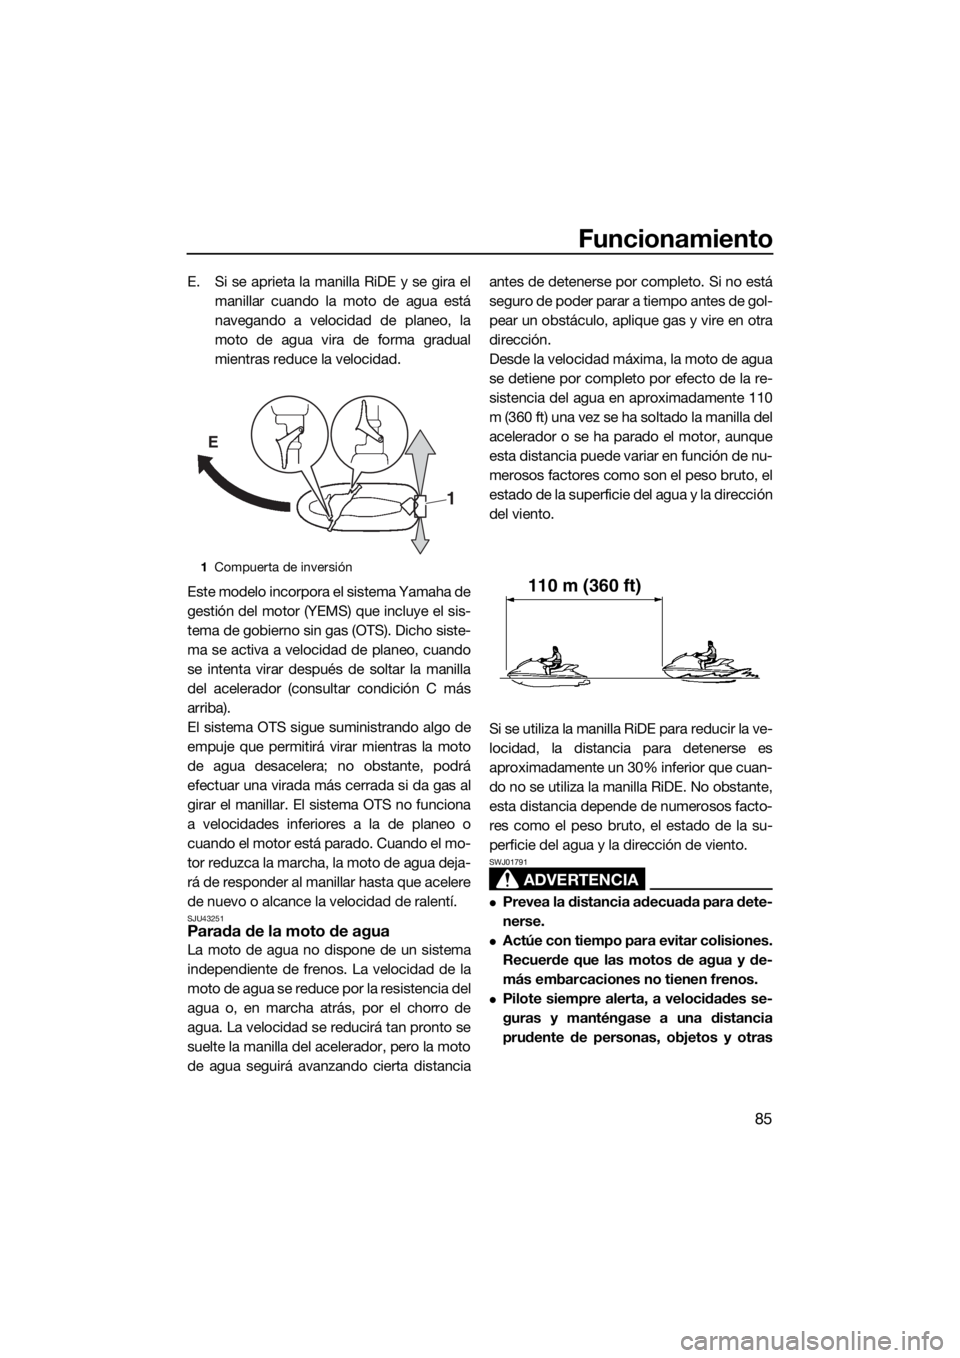 YAMAHA FX HO CRUISER 2015  Manuale de Empleo (in Spanish) Funcionamiento
85
E. Si se aprieta la manilla RiDE y se gira el
manillar cuando la moto de agua está
navegando a velocidad de planeo, la
moto de agua vira de forma gradual
mientras reduce la velocida